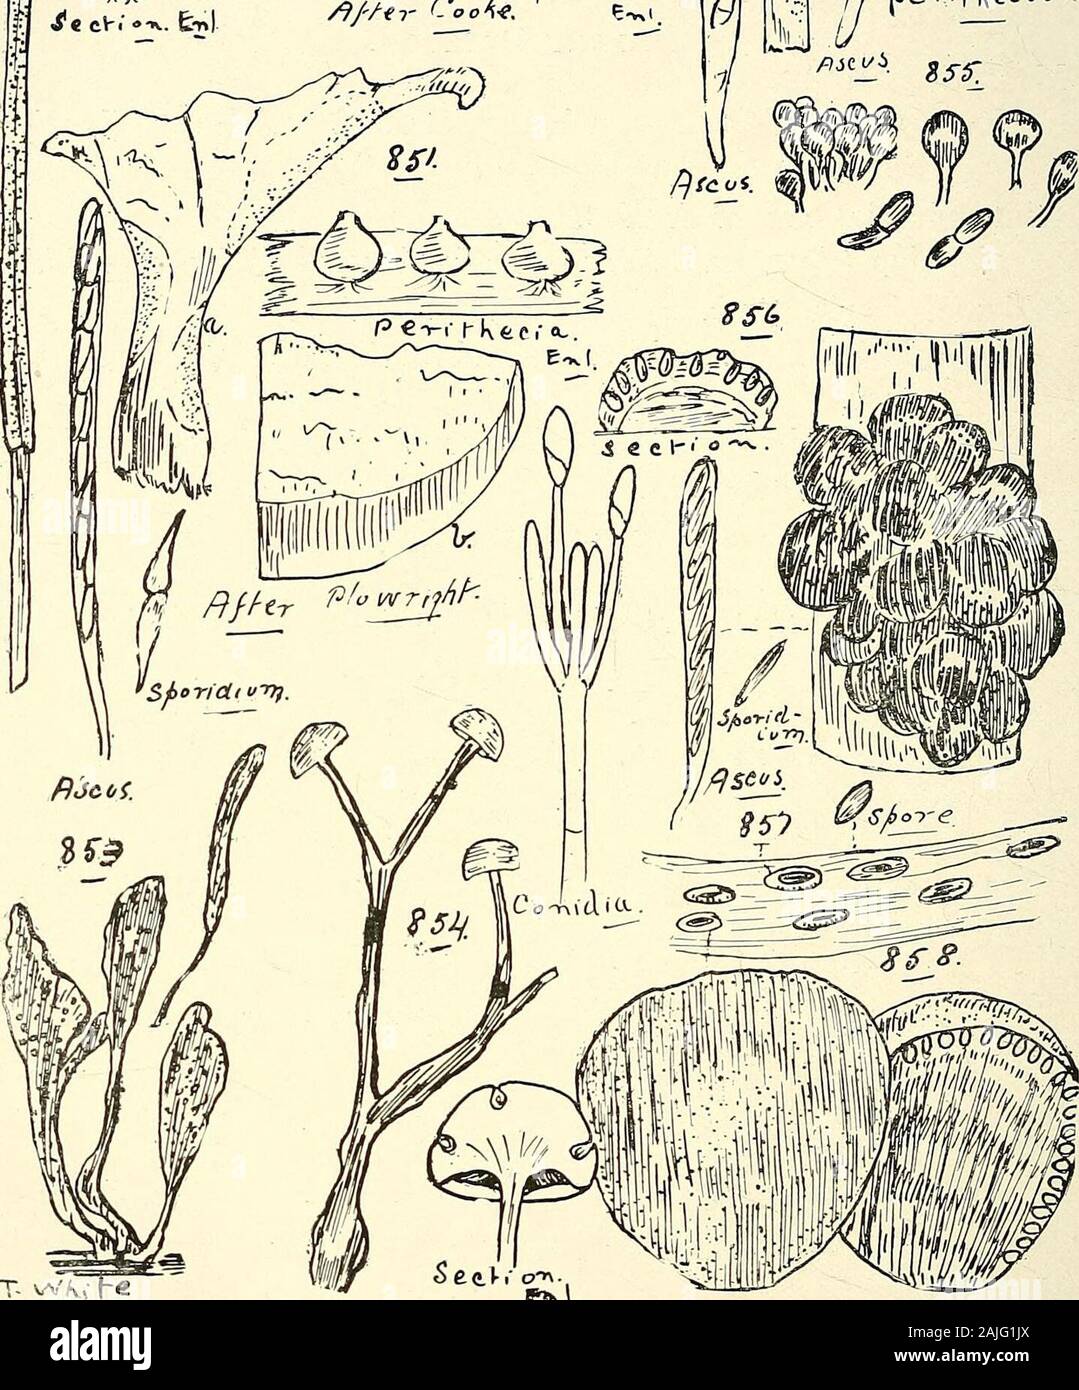 Catalogo completo del Queensland piante, entrambe le popolazioni indigene e naturalizzati ai quali si sono aggiunti, se noto, aborigeni e altri nomi dialettali; con numerose illustrazioni e copiose note sulla proprietà, caratteristiche, &c., delle piante . J a OTidiA, jatv.il-^tCvJTY. p*k. $46. Tribliadella rufula, Spreng. 848. Epichloe cinerea, S^r/e. gf Br. .847. Hysterographium hiascens, Rehm. 849. Hypocrea discoidea, 5&LT;?R£. c/ Br. 850. Nectria coccinea, patatine fritte. Cluster di perithecia nat. dimensioni, setta, di perithecium enl., e arcus en1. 851. Hypomyces AURANTIUS, fino a. (A) Hypomyces su Panu, ( Foto Stock